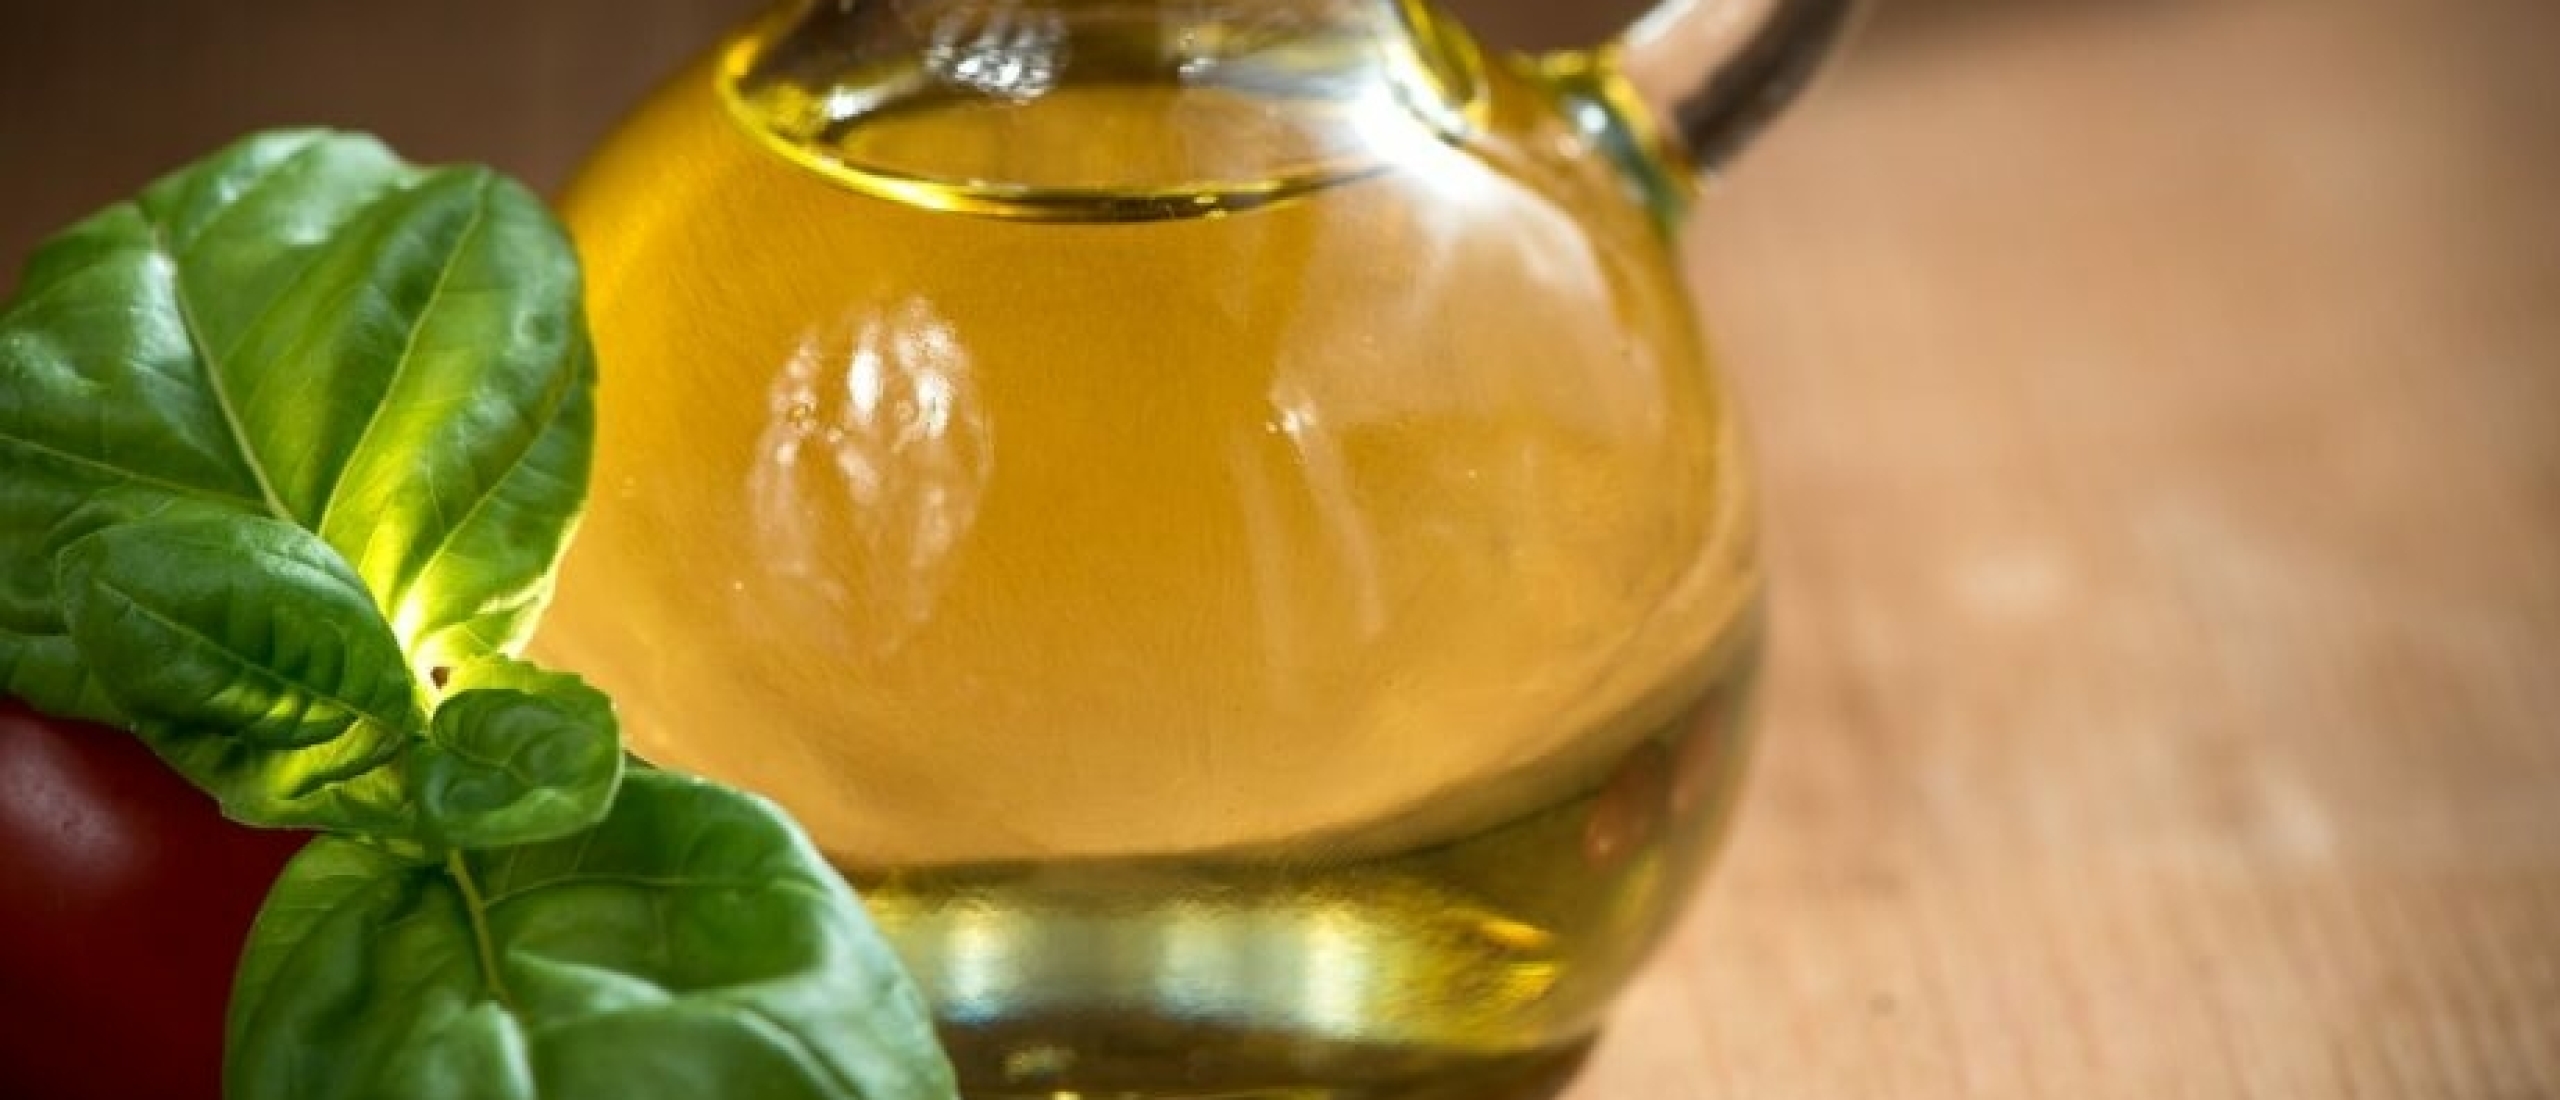 De vele voordelen van olijfolie